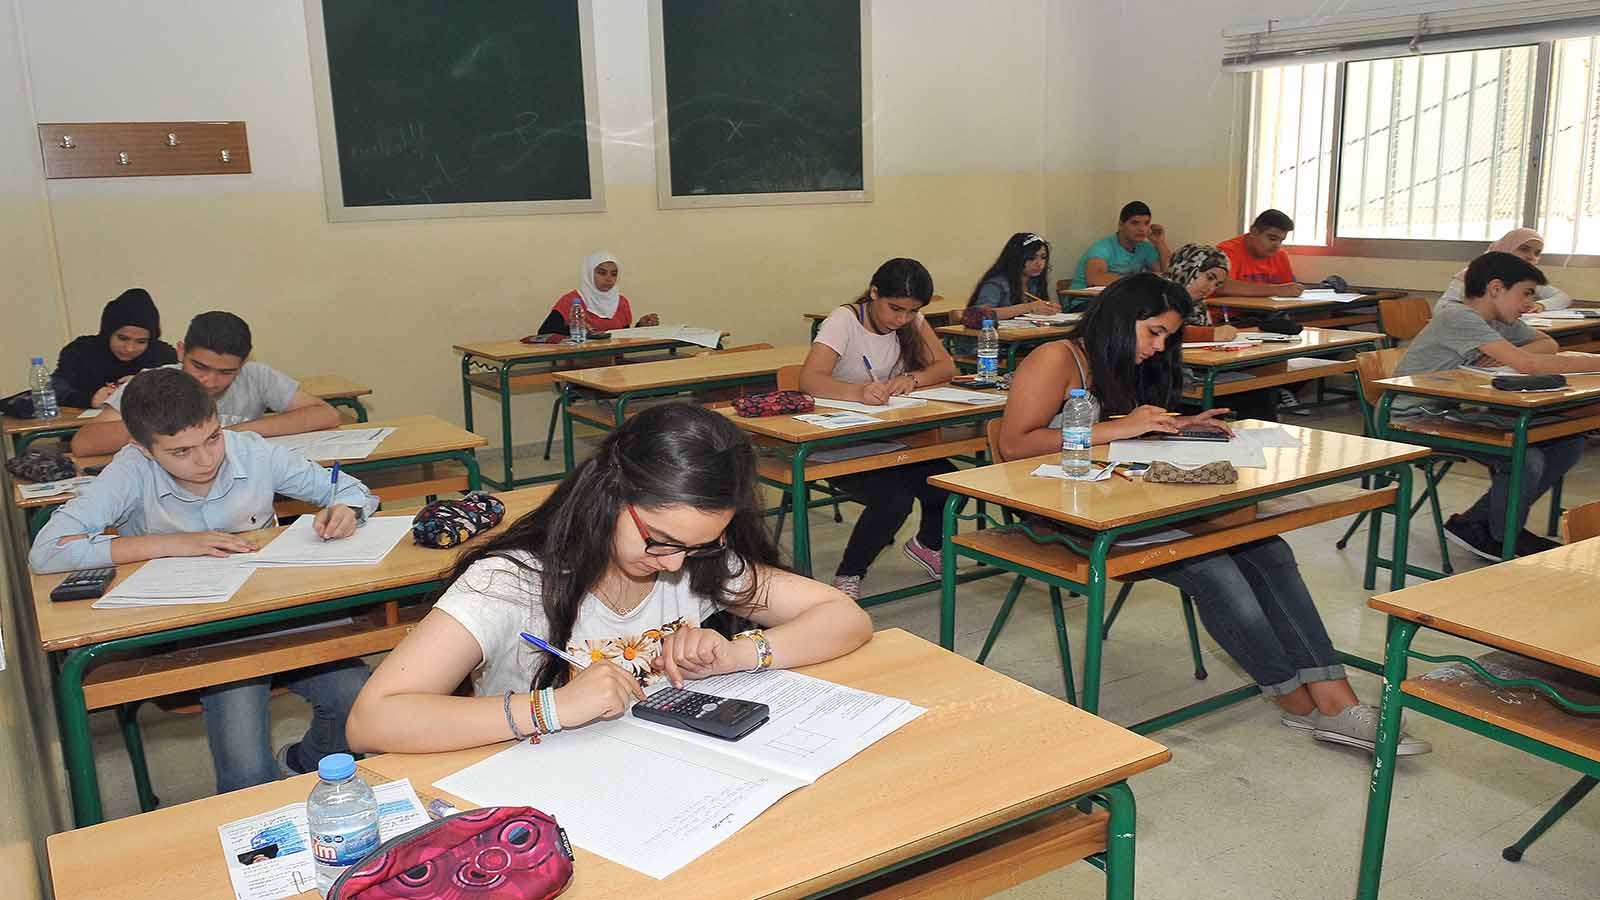 التلامذة الفلسطينيون يفكّرون في ما بعد الامتحانات